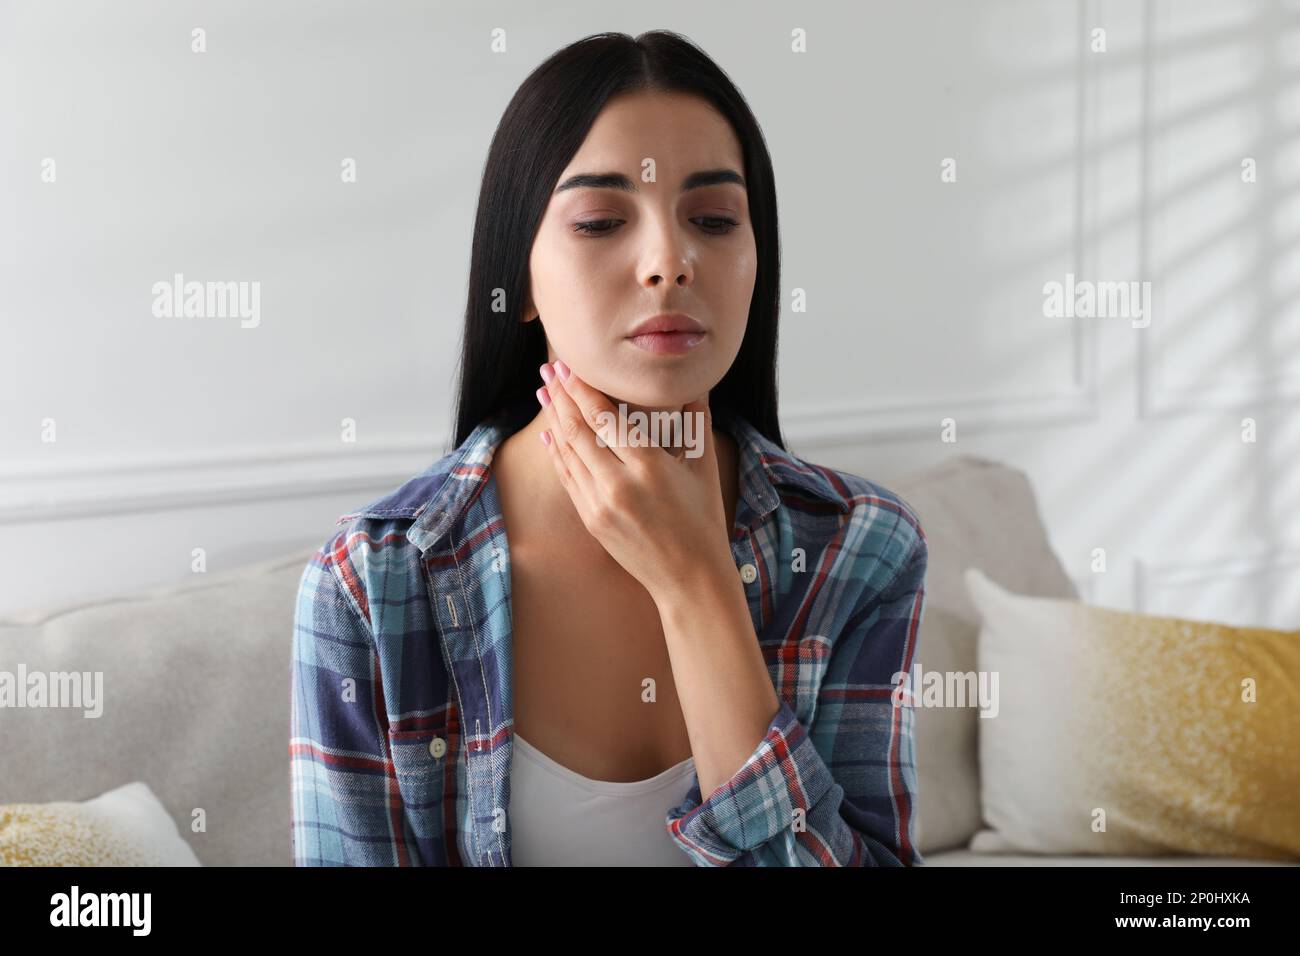 Jeune femme effectuant un auto-examen de la thyroïde à la maison Banque D'Images